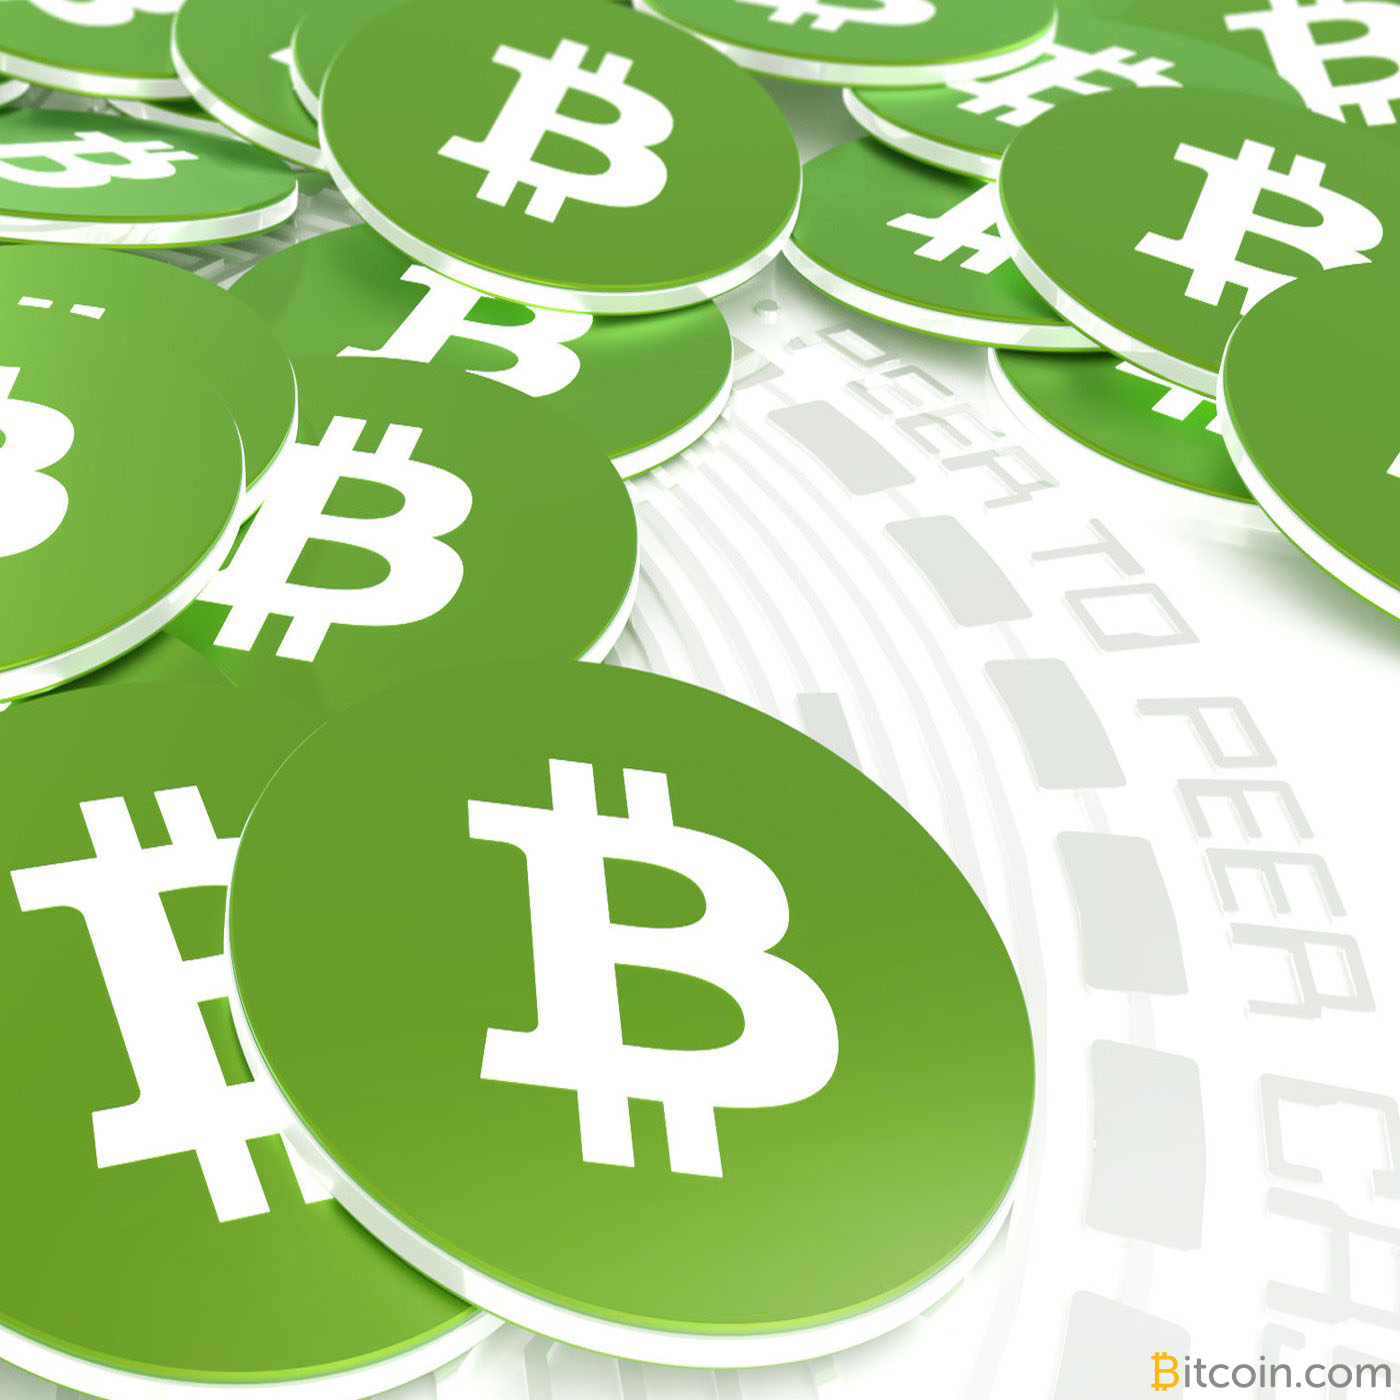 Bitcoin cash gets its network update on november 1 обмен валют в туле сбербанк